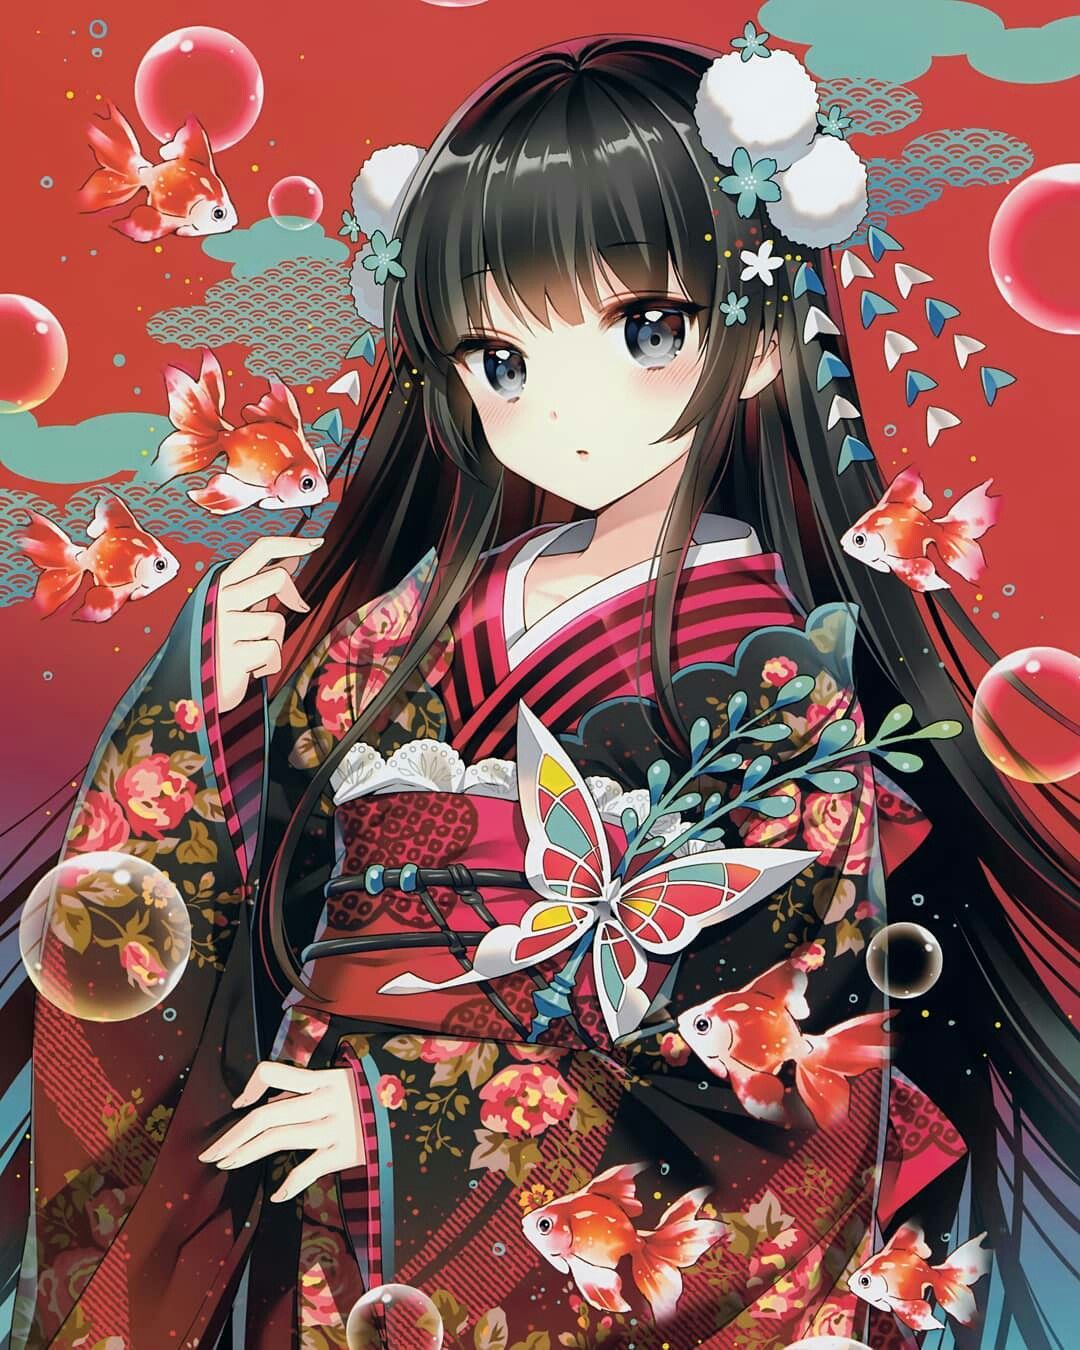 Cảm giác cổ trang màu mè tạm rời, hãy cùng nhìn vào nét đẹp truyền thống của nhân vật nữ anime tóc đen trong trang phục cổ trang, rất đáng yêu đấy!